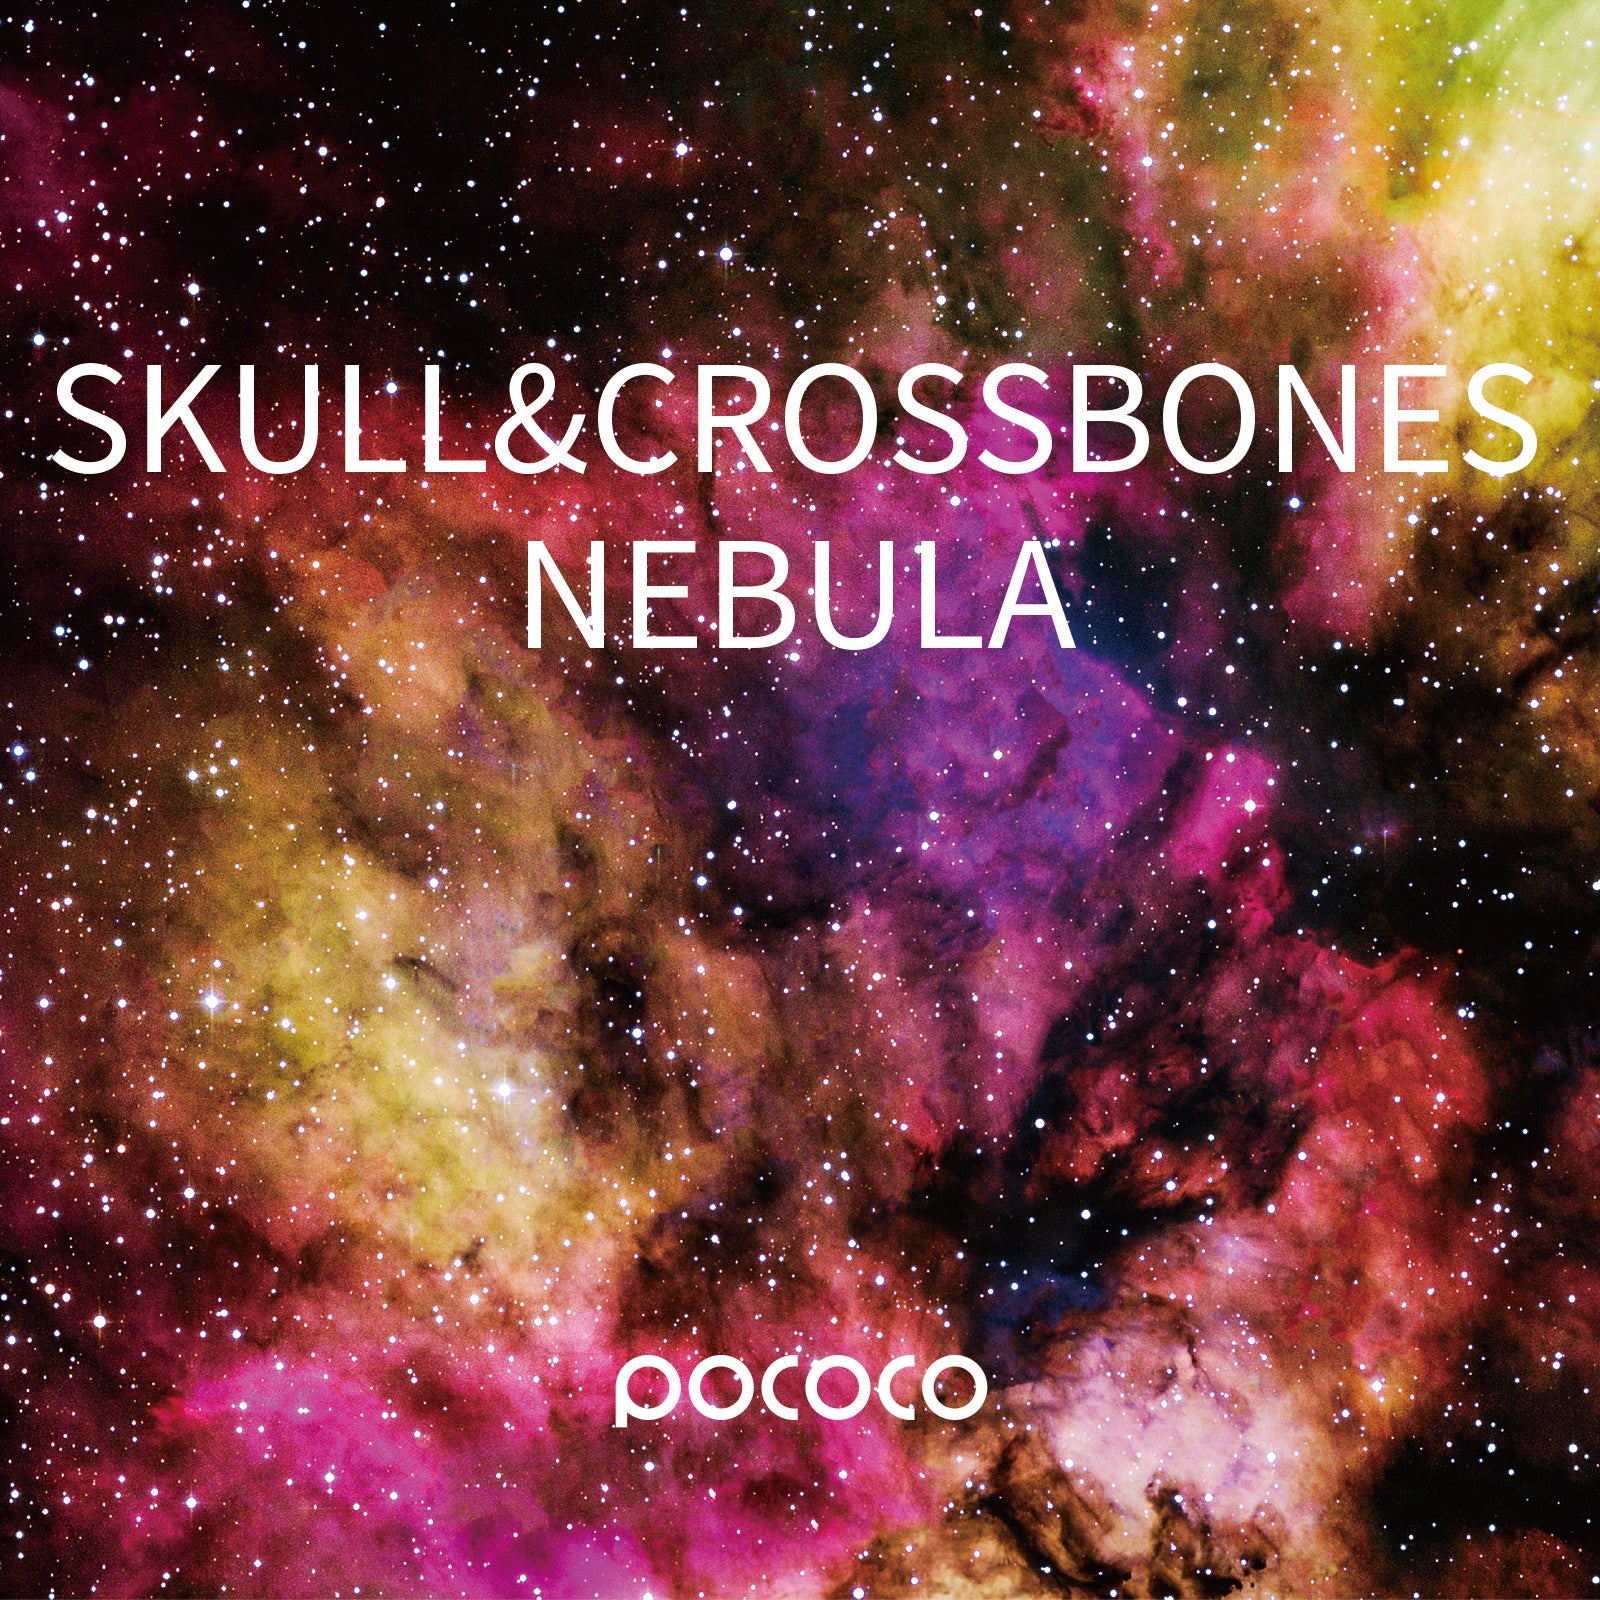 POCOCO Galaxy Projector Disc - Skull Crossbones